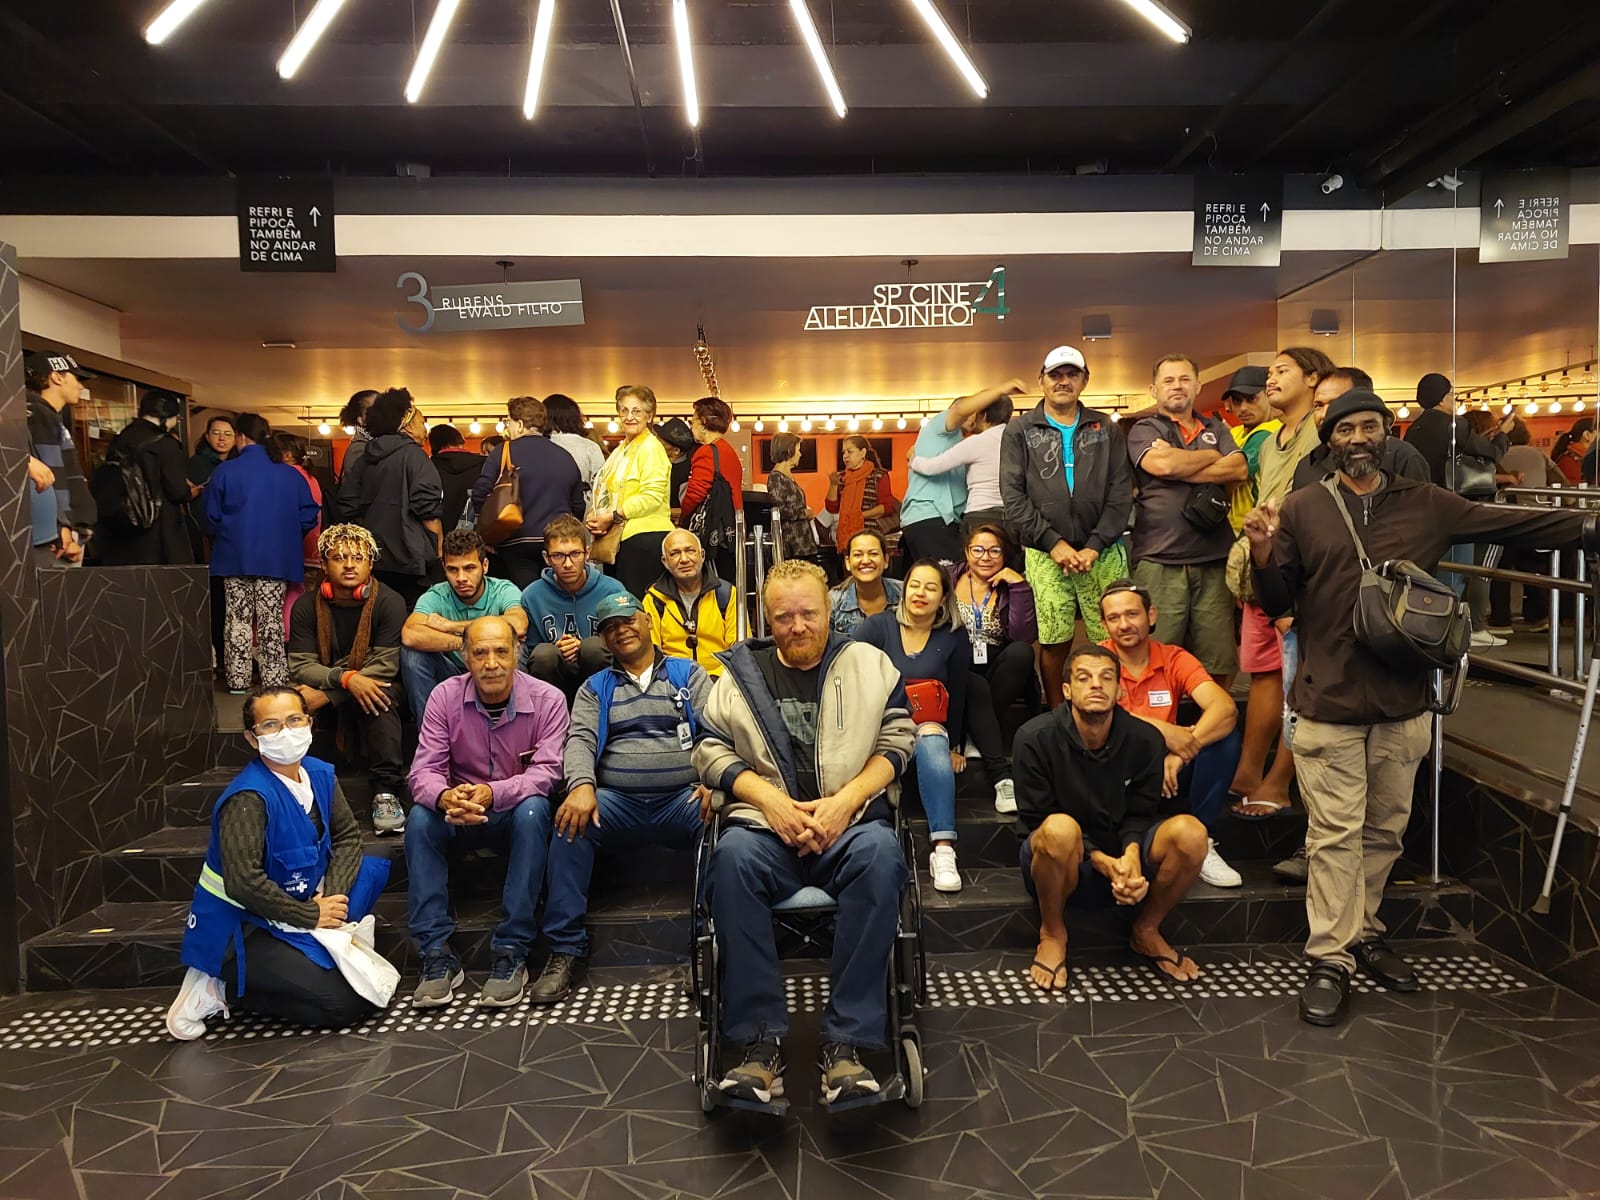 A foto mostra um grupo com cerca de 20 pessoas sentadas no hall de um cinema; acima deles, vê-se a indicação de salas de cinema; em primeiro plano, entre as pessoas que estão posando para a foto, ,está um homem sentado em uma cadeira de rodas